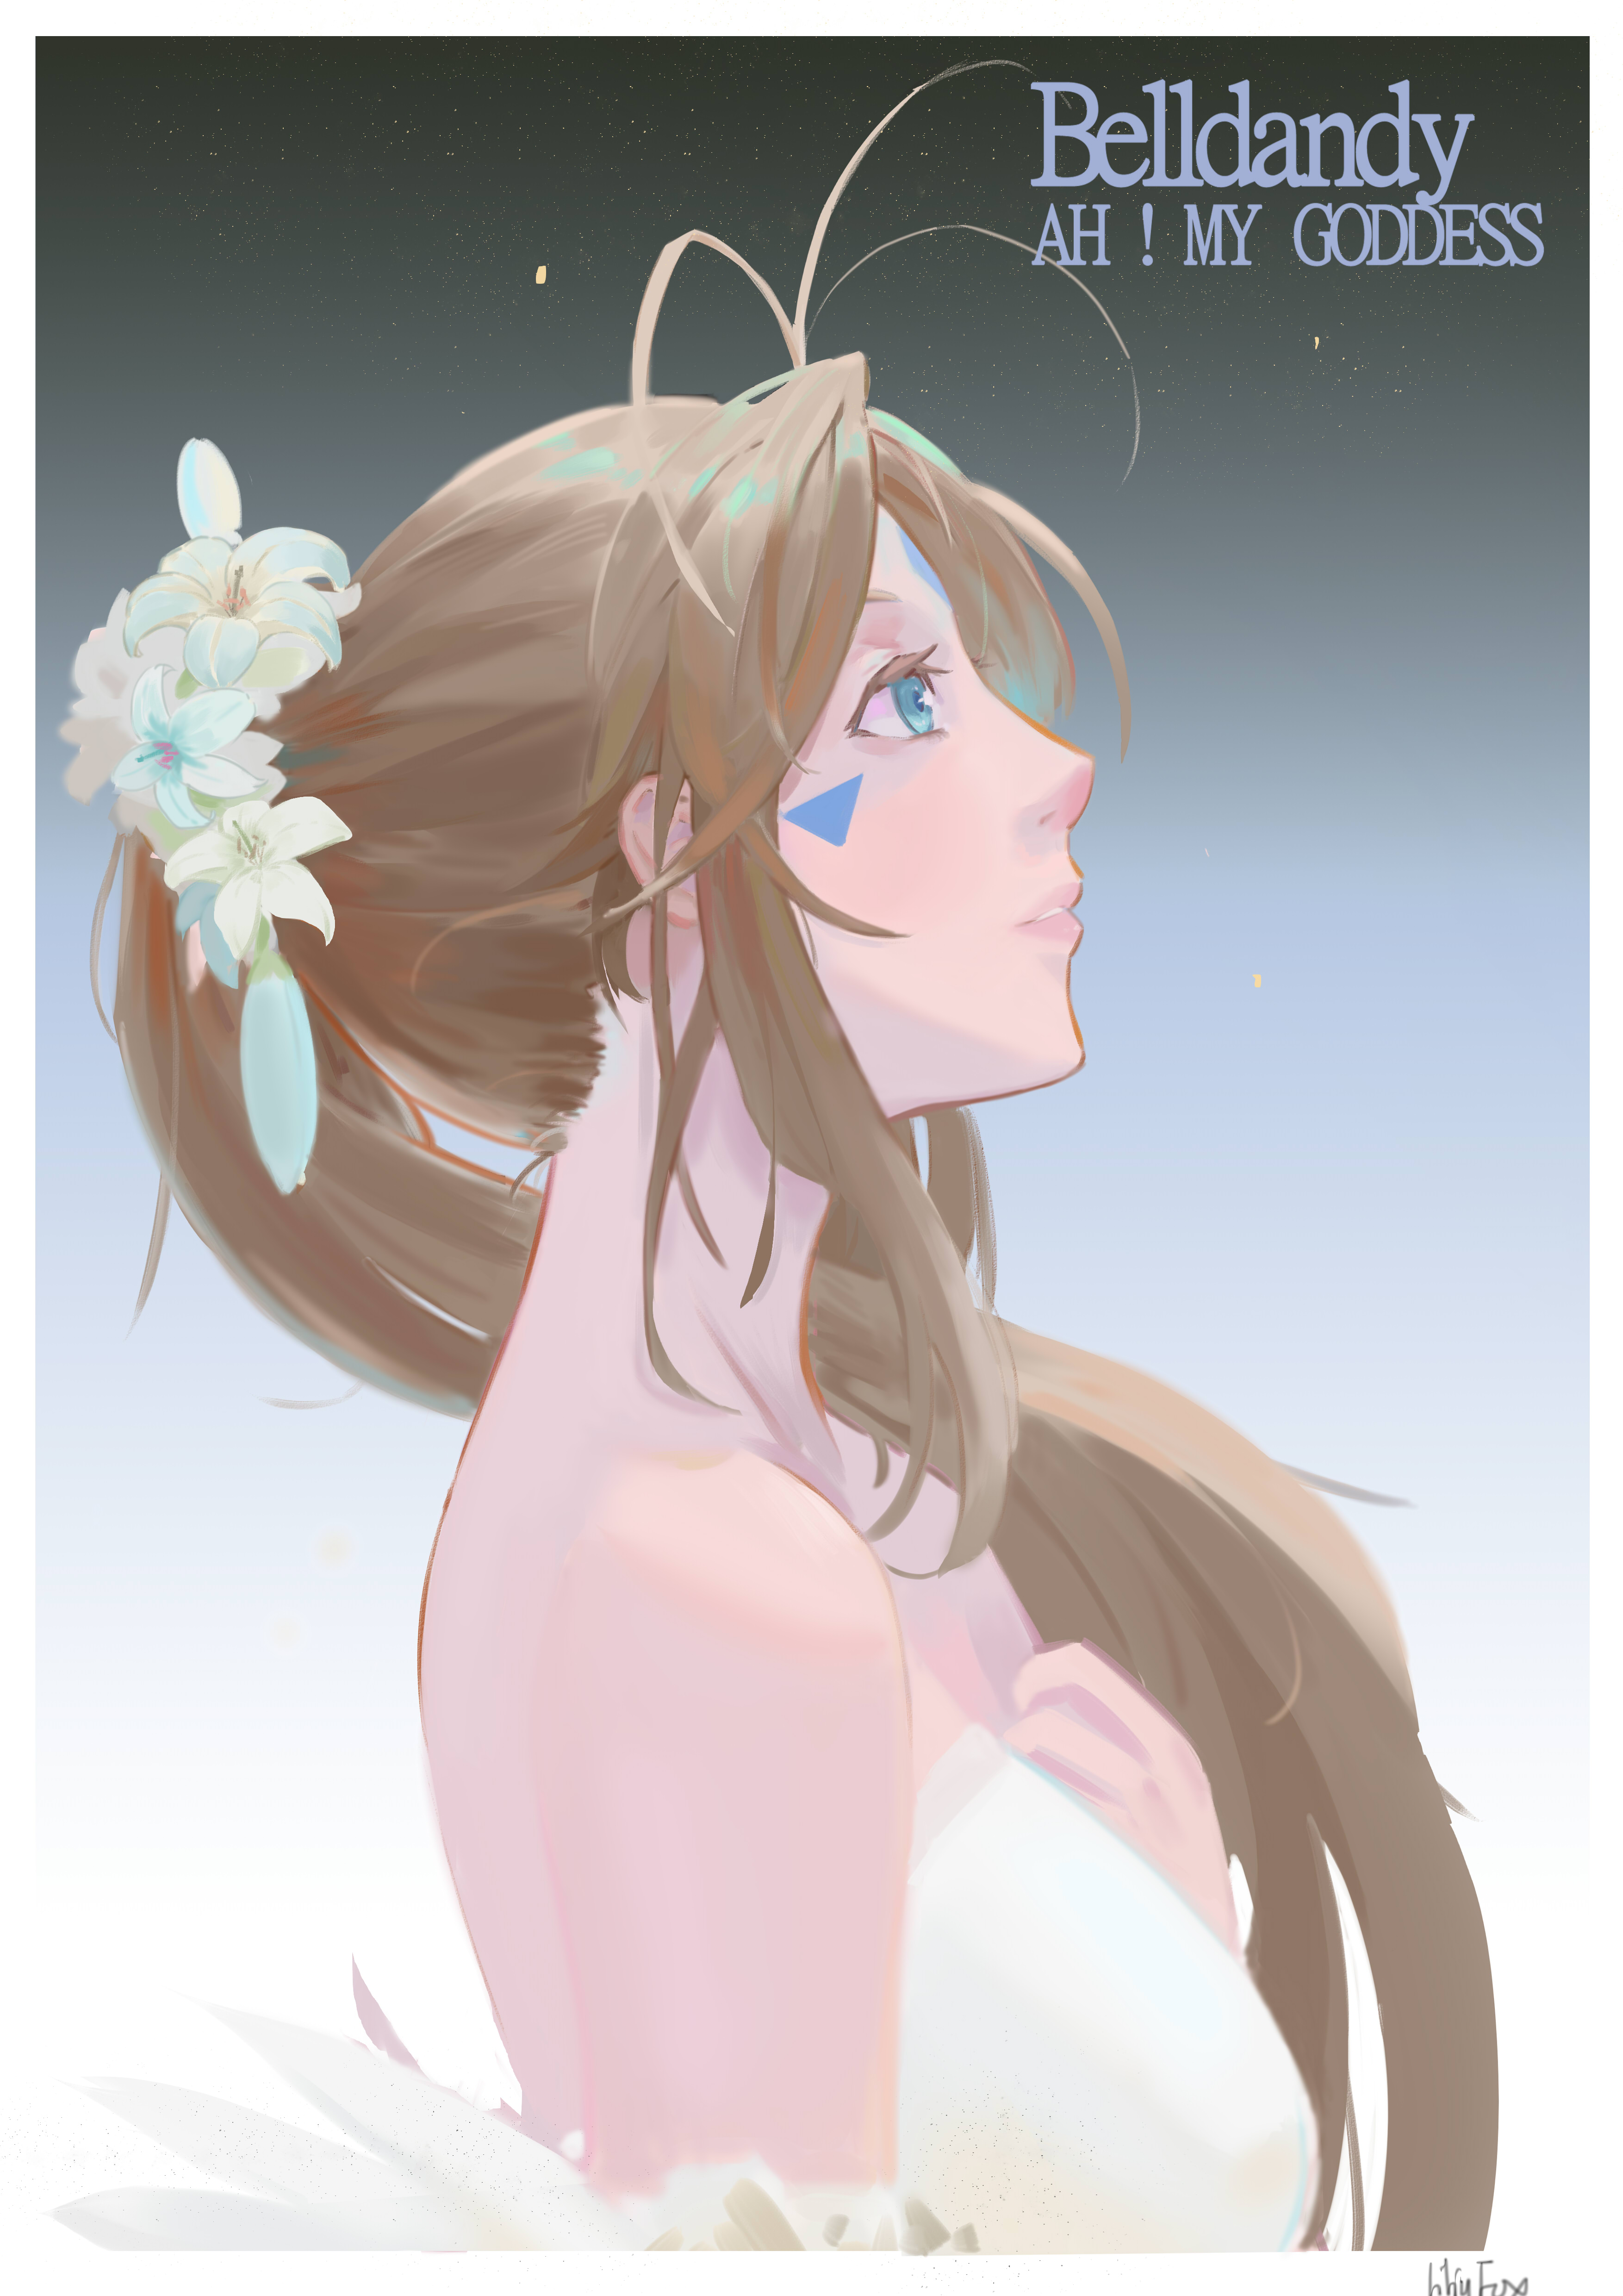 Ah My Goddess Anime Girls Long Hair Brunette Ponytail Belldandy White Dress Blue Eyes Fan Art 2D Ver 3507x4960